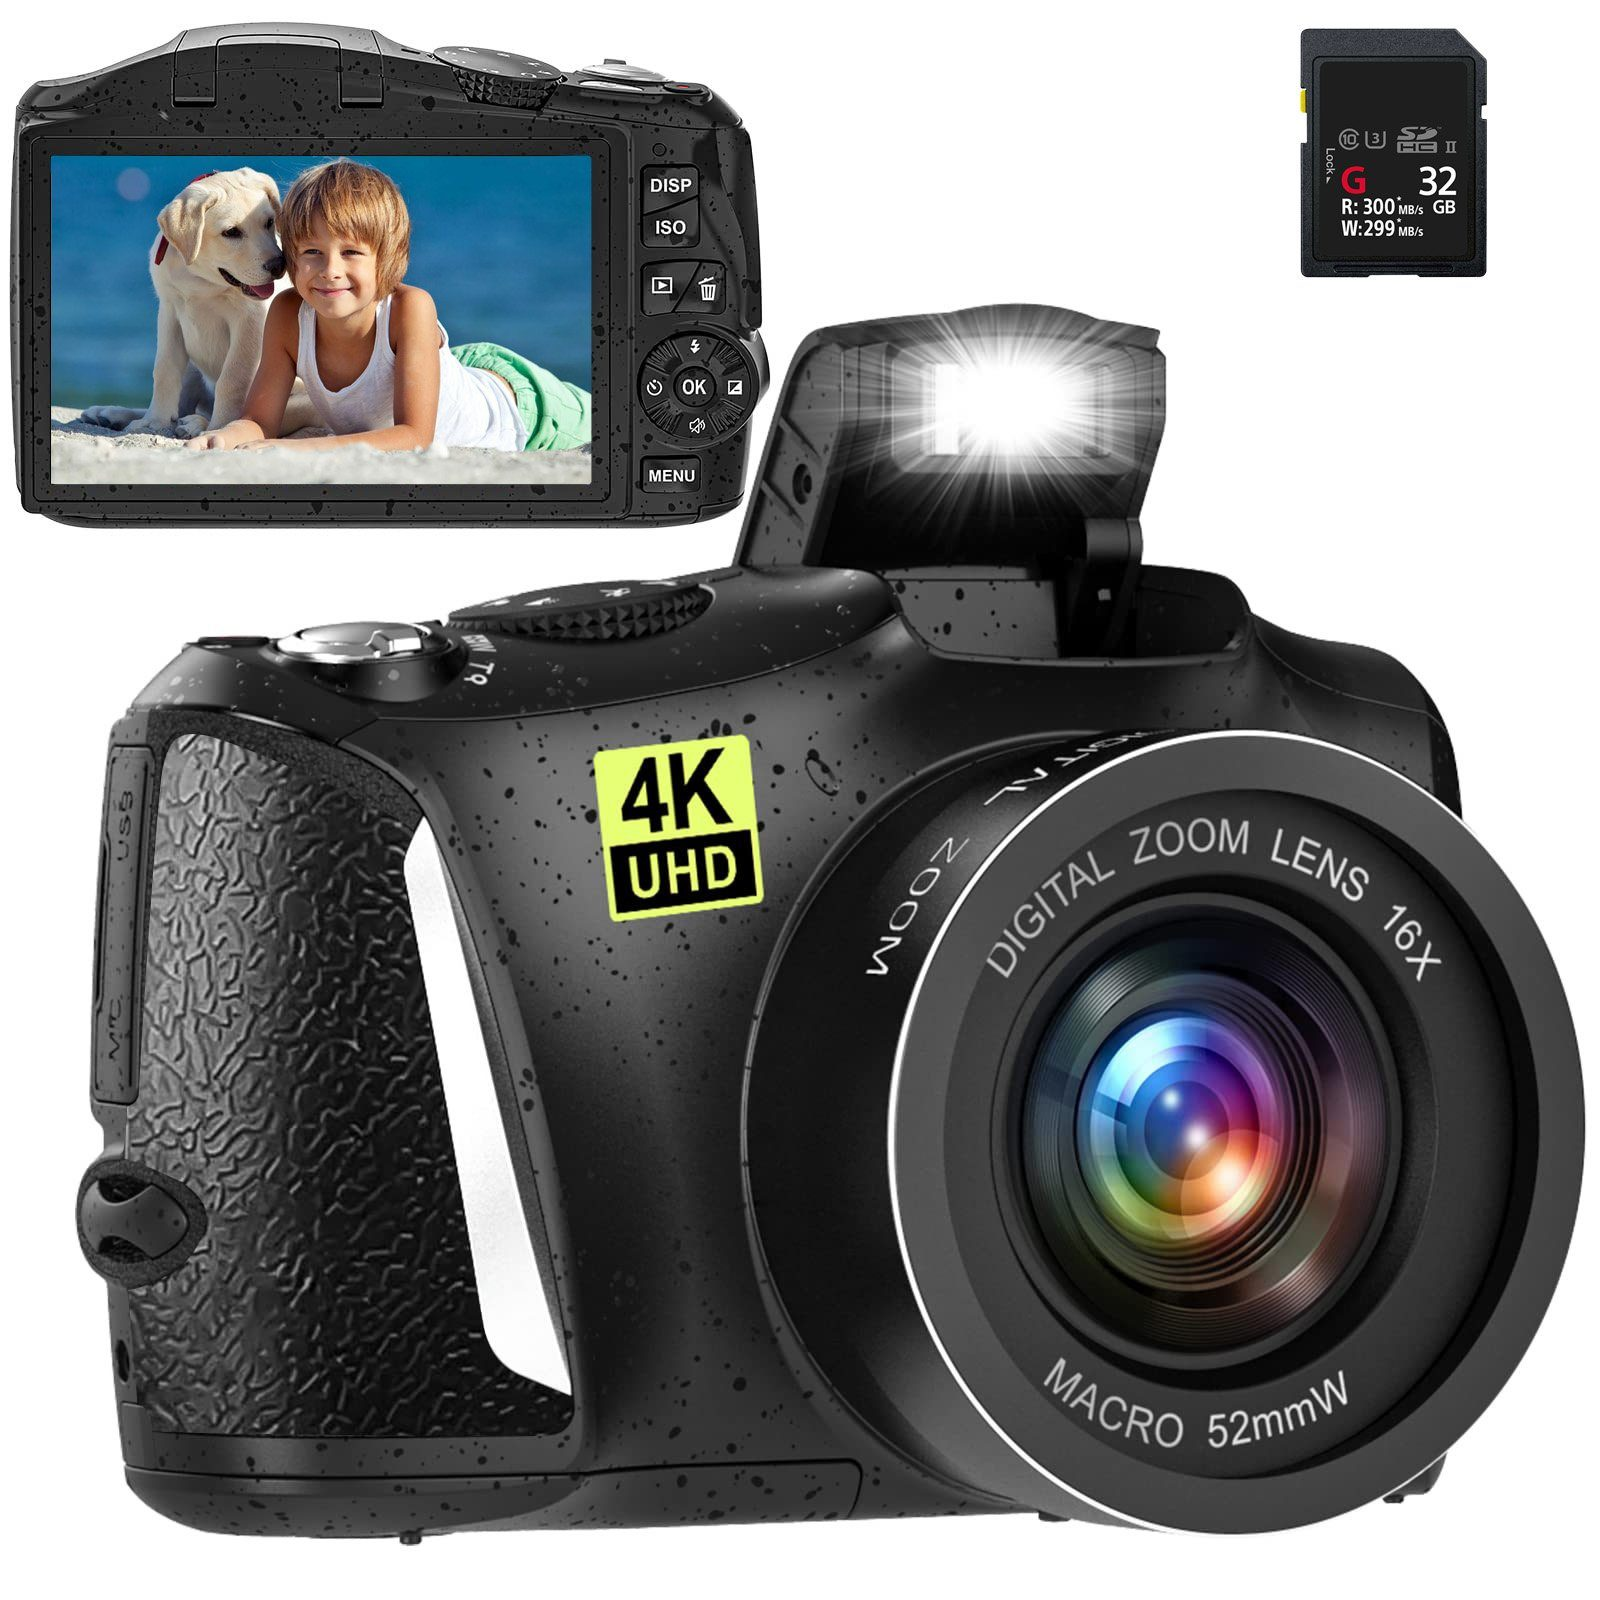 FINE LIFE PRO 16x | Taschen-Digitalkamera 48 4K Megapixel 60FPS Digitalzoom Ultra HD Kamera Digitalkamera, Schwarz, 3Zoll